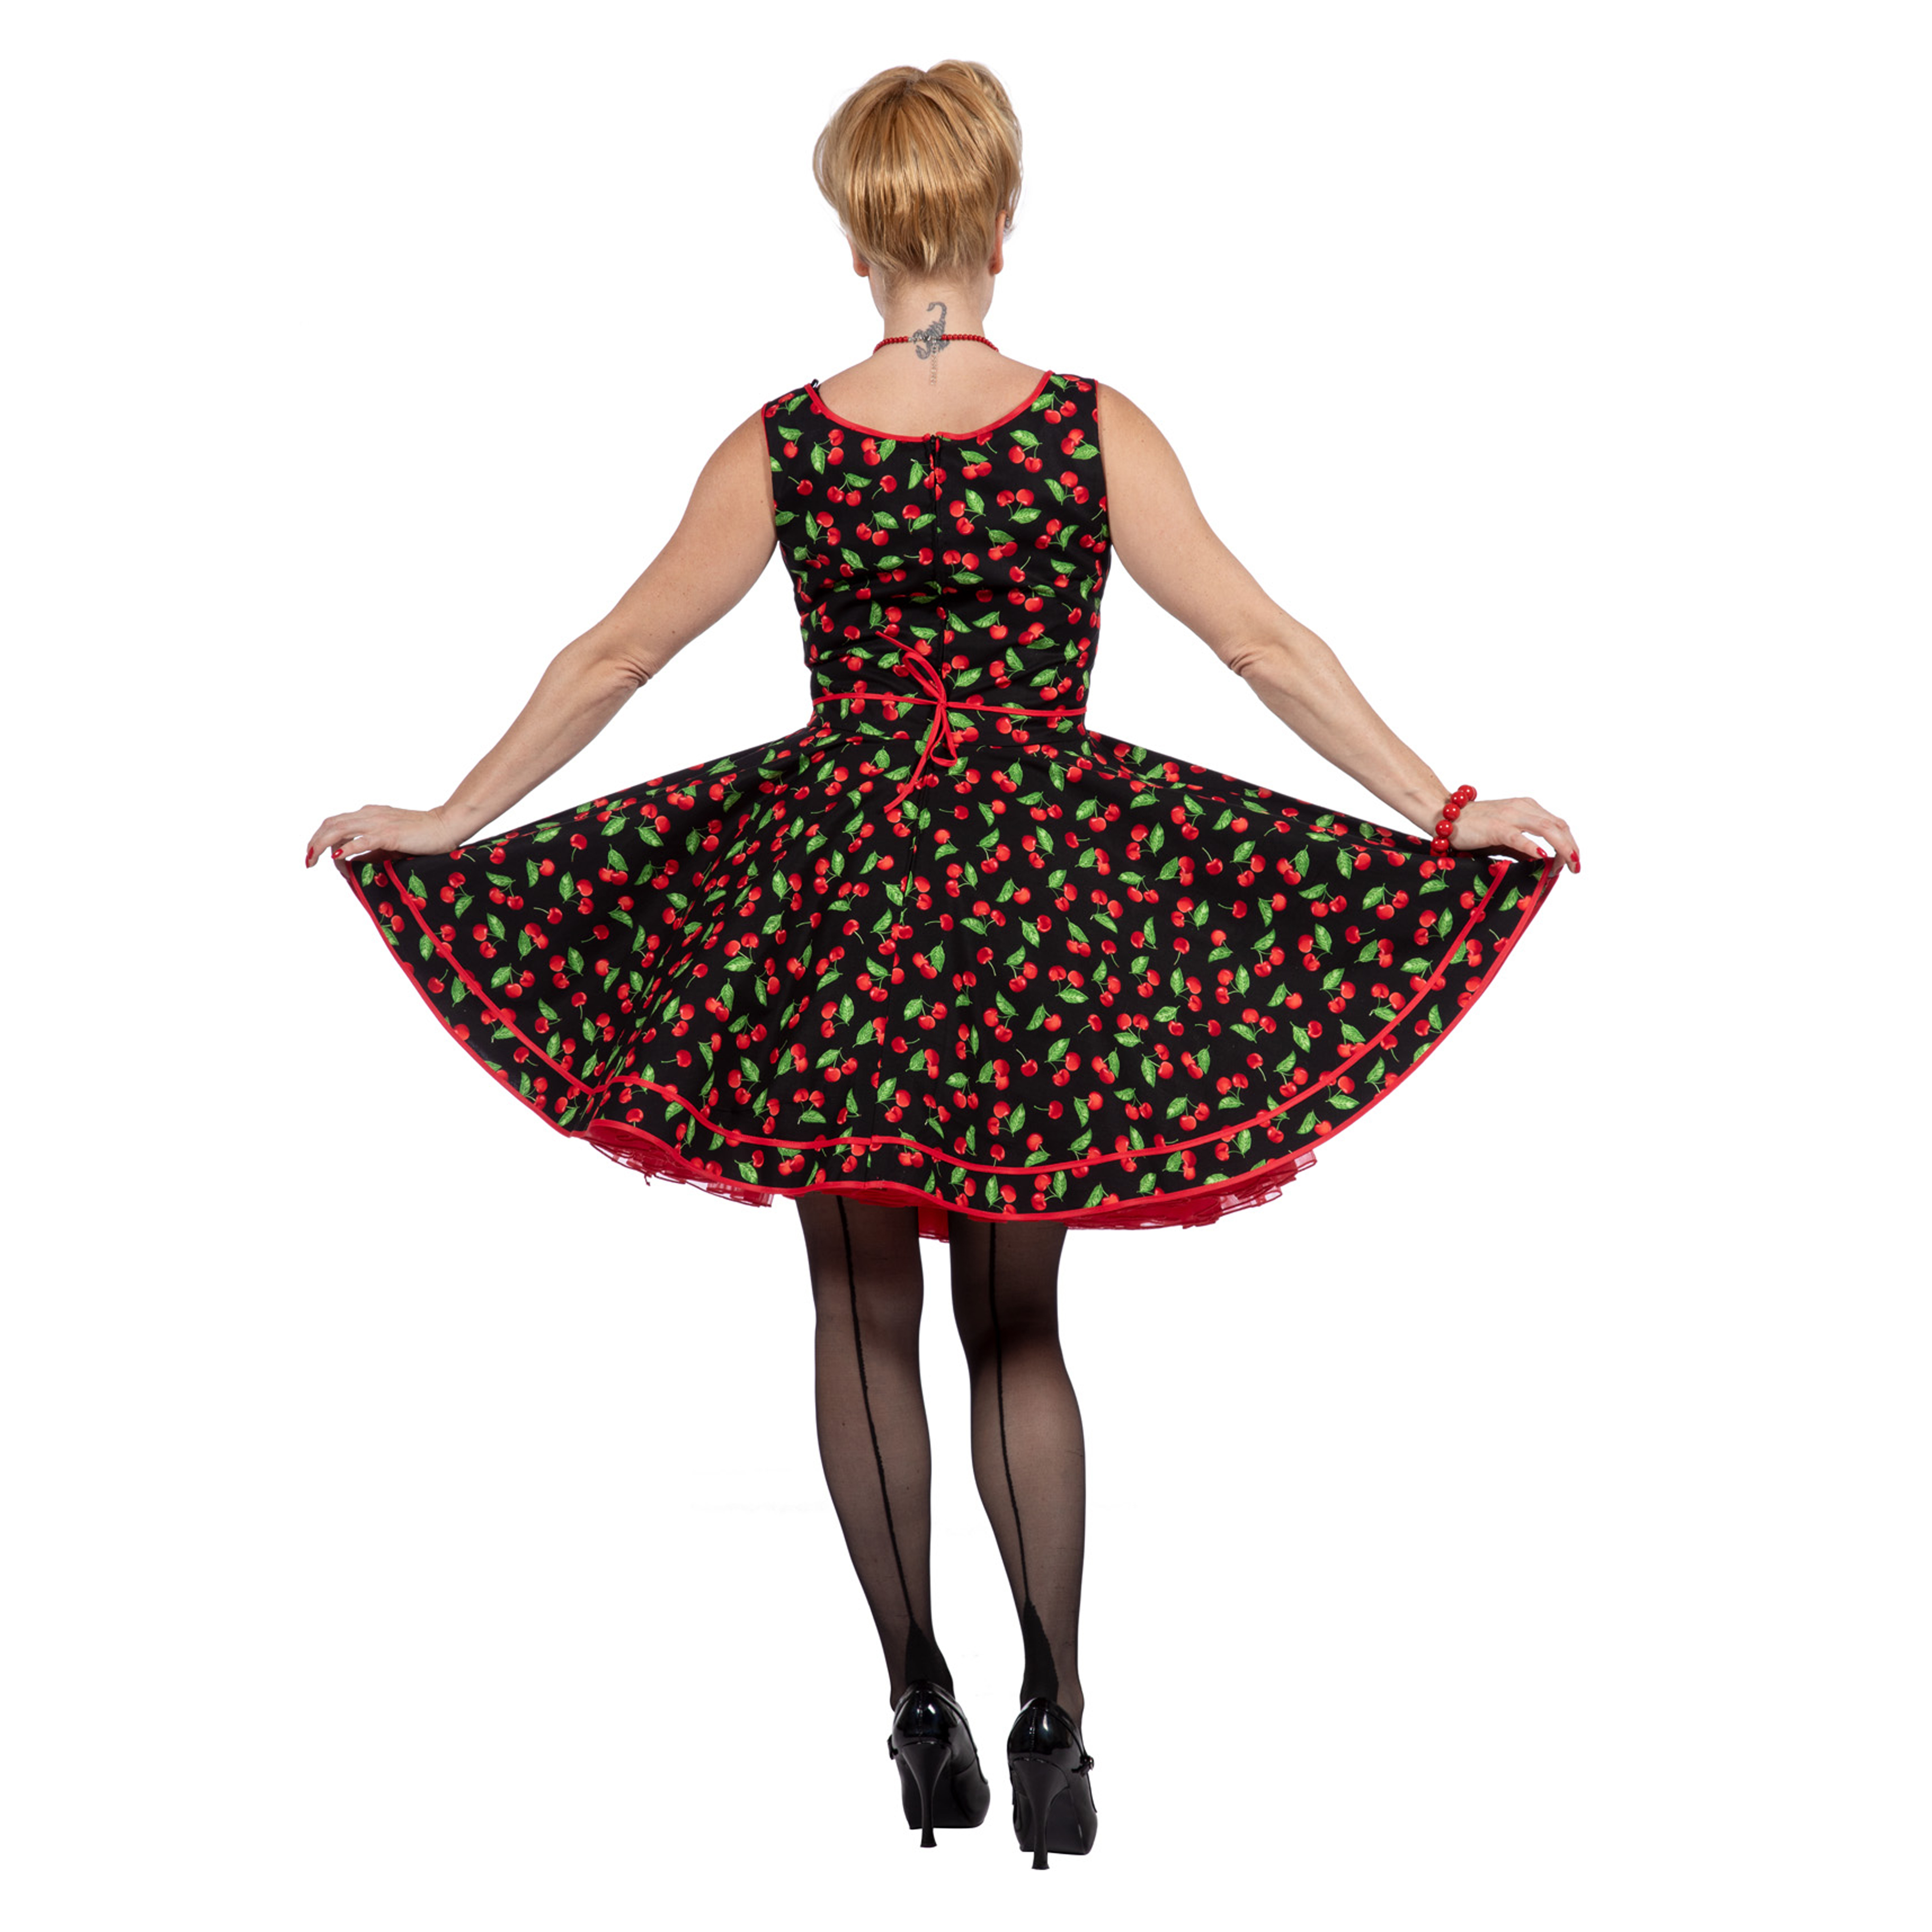 Premium-Line Damen-Kleid Rockabilly Cherry, Gr. 38 Bild 3